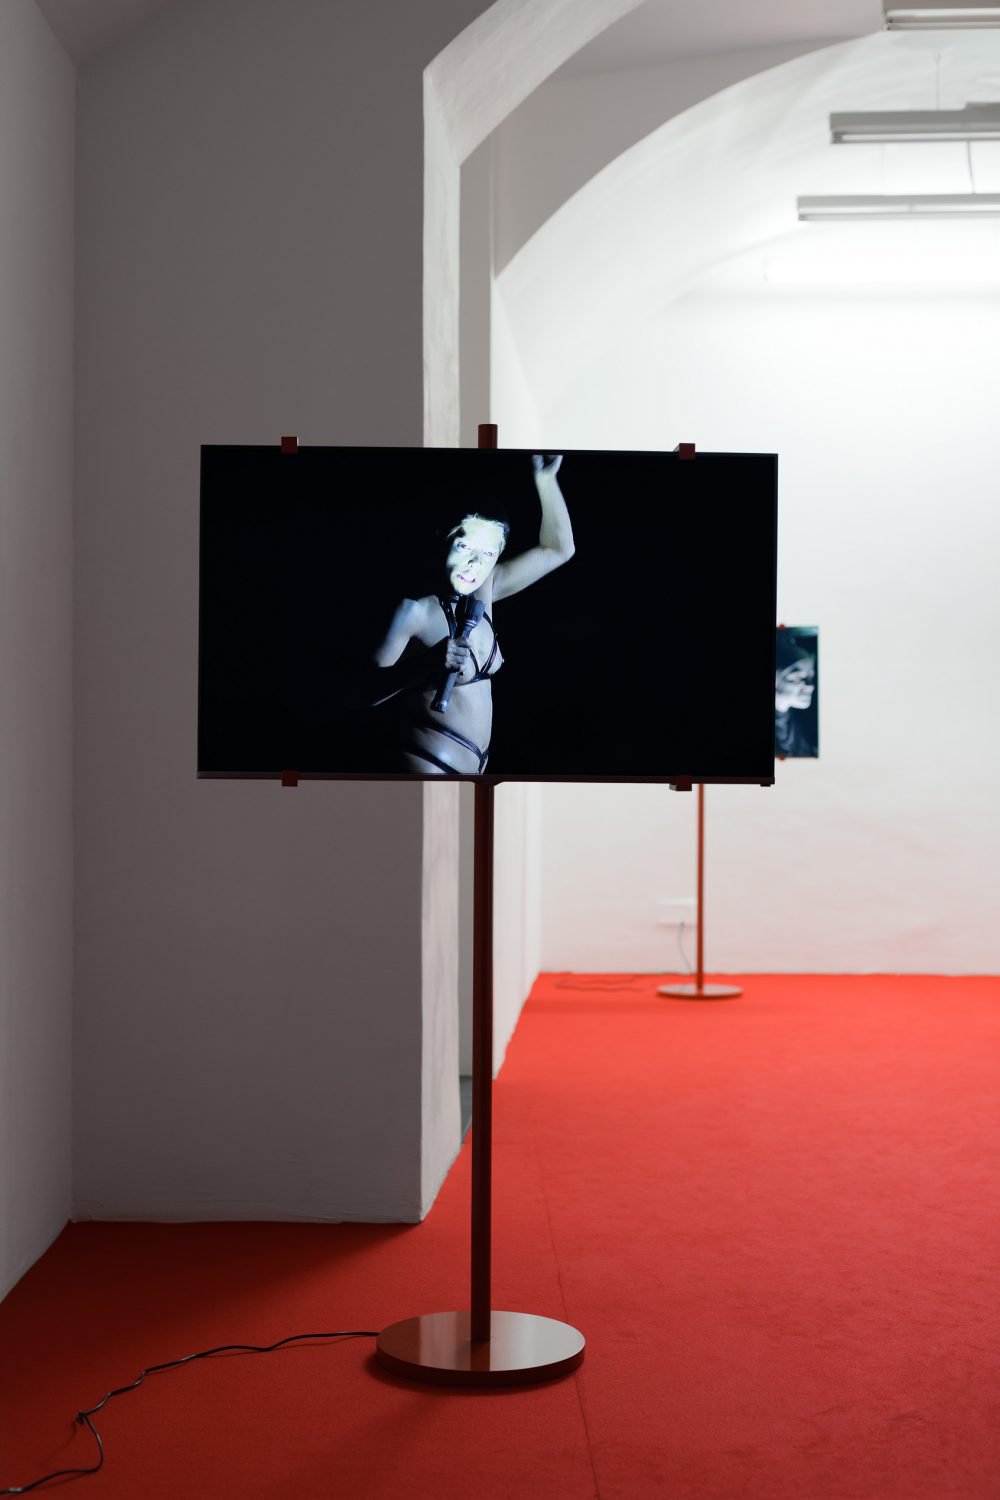 Lili Reynaud-DewarInstallation viewBeyond the Land of Minimal Possessions, Layr Seilerstaette, Vienna, 2019